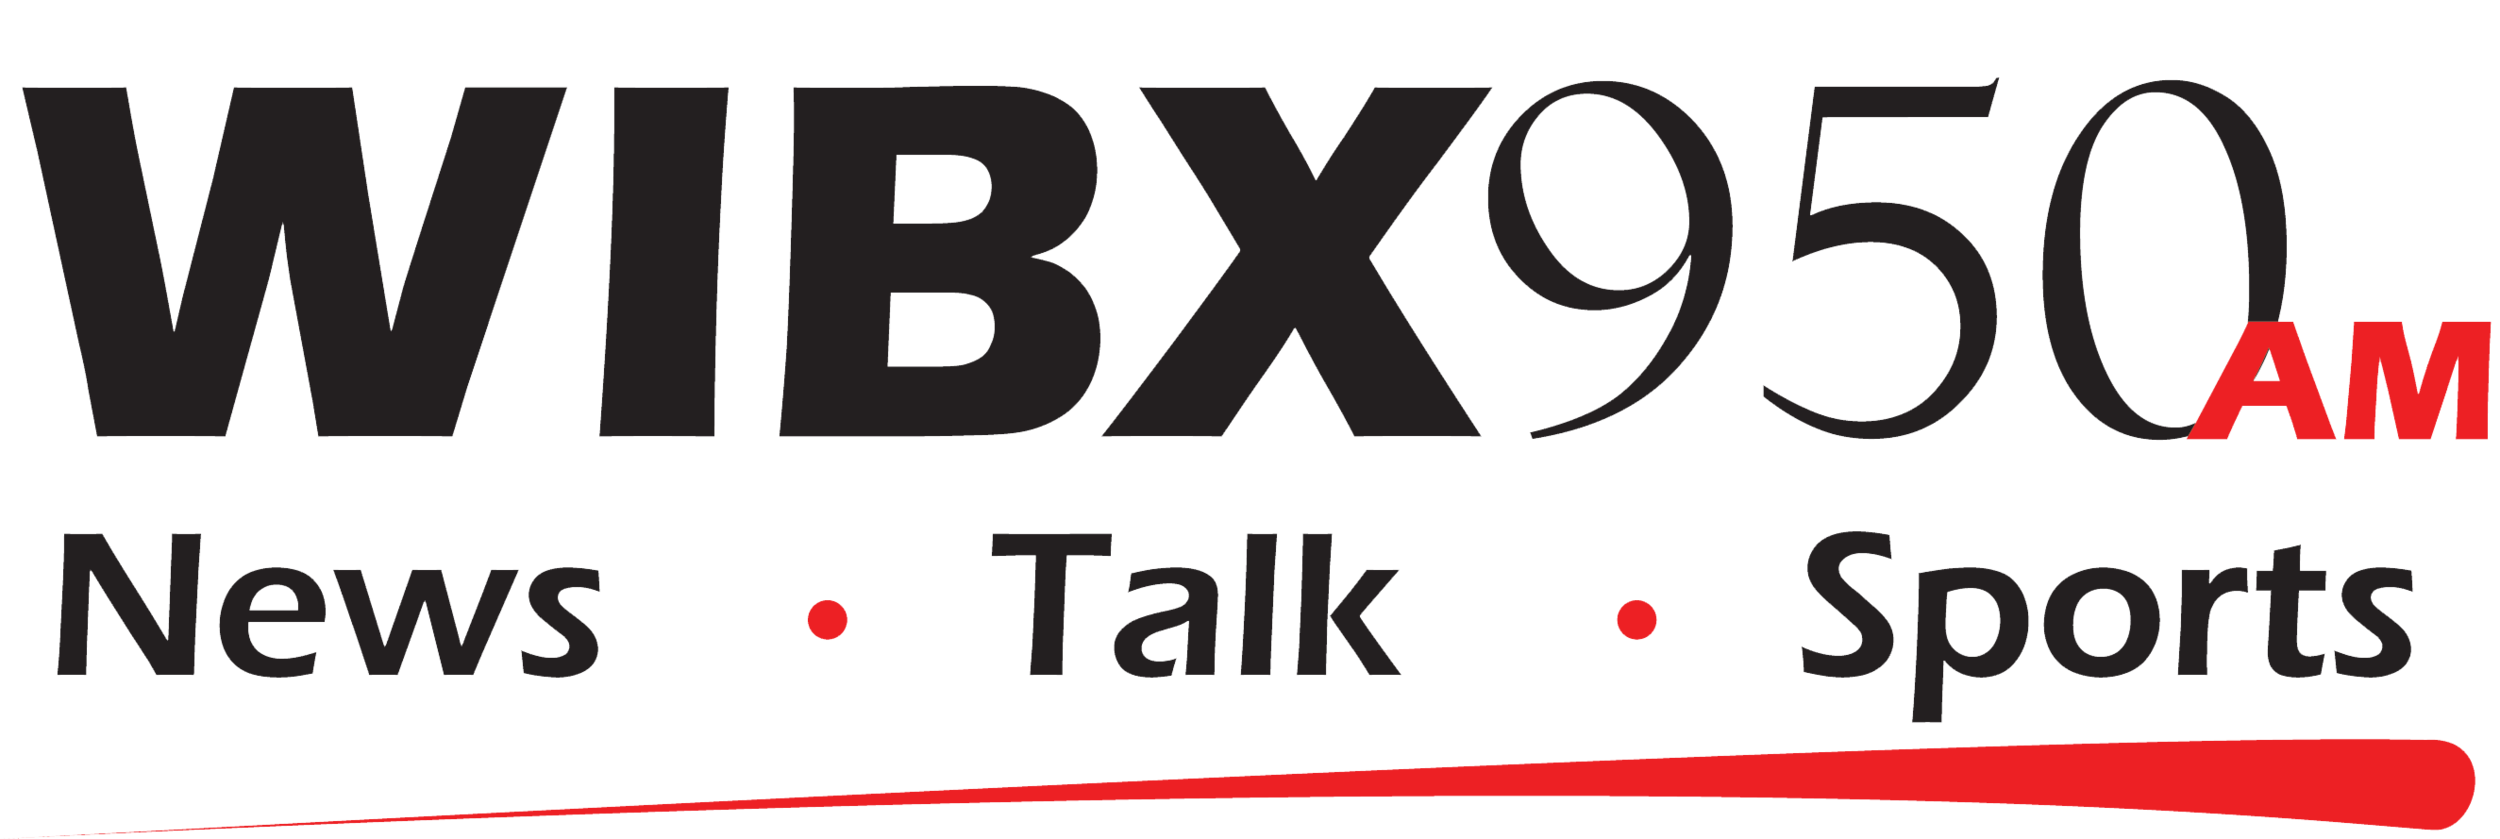 WIBX logo.png